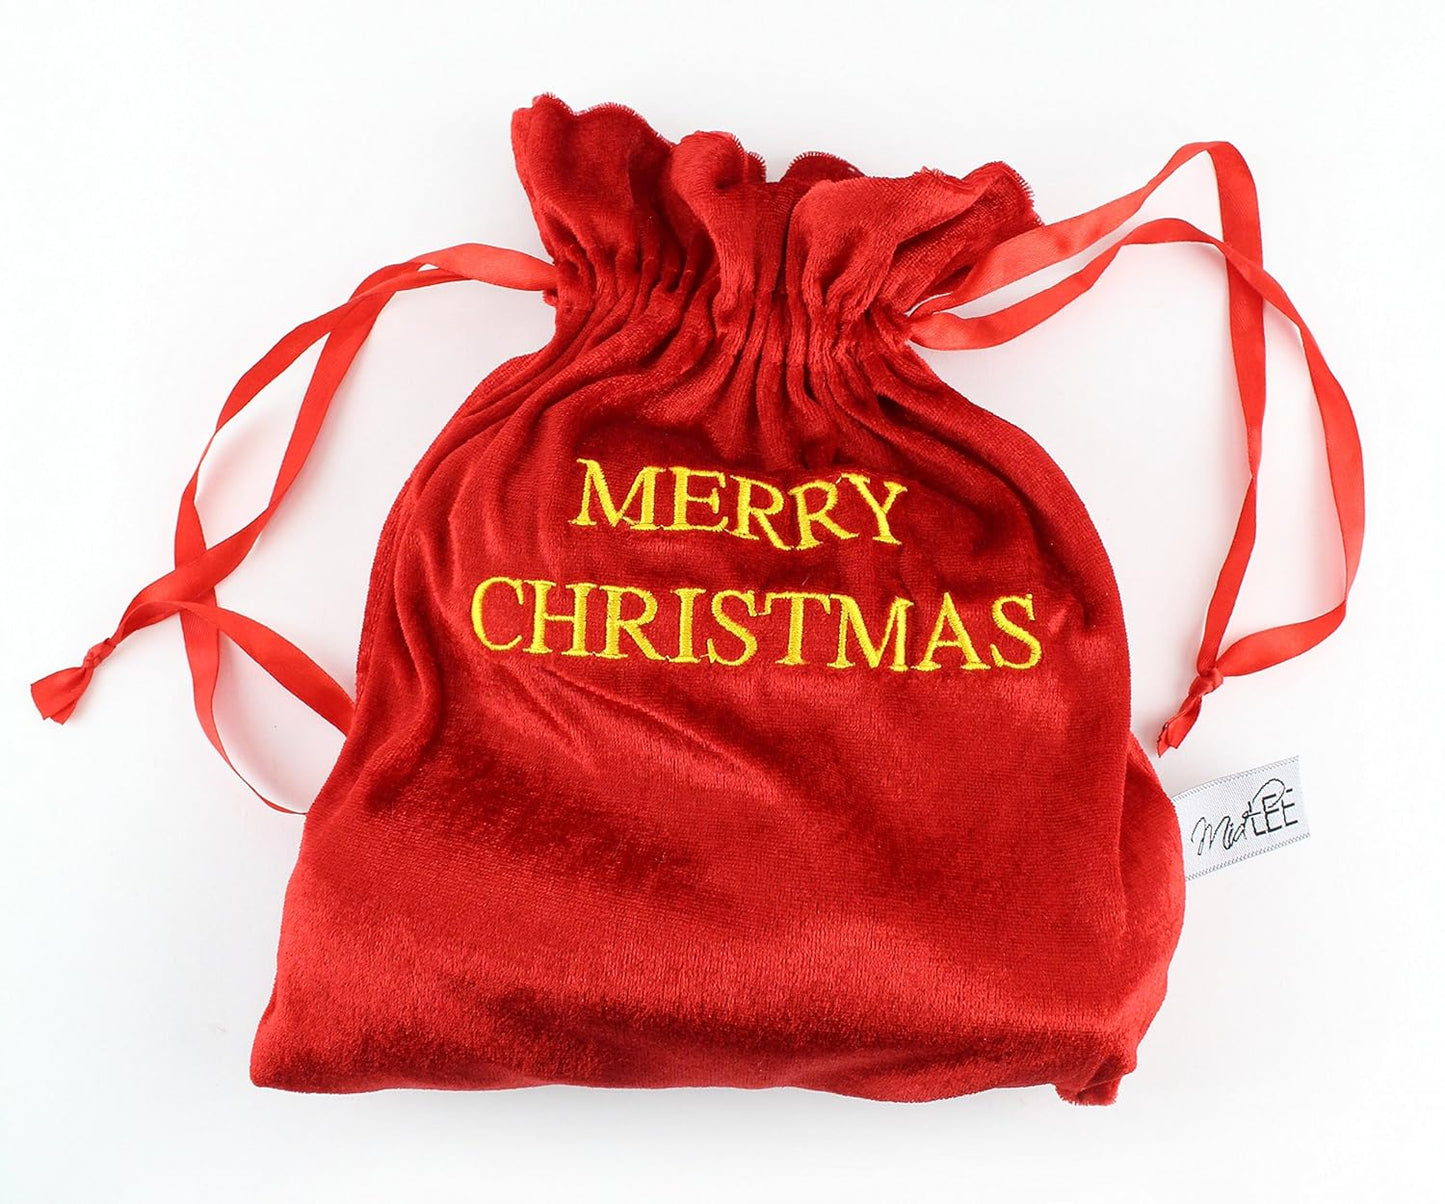 Midlee Santa's Gift Bag Dog Toy - 2.5"